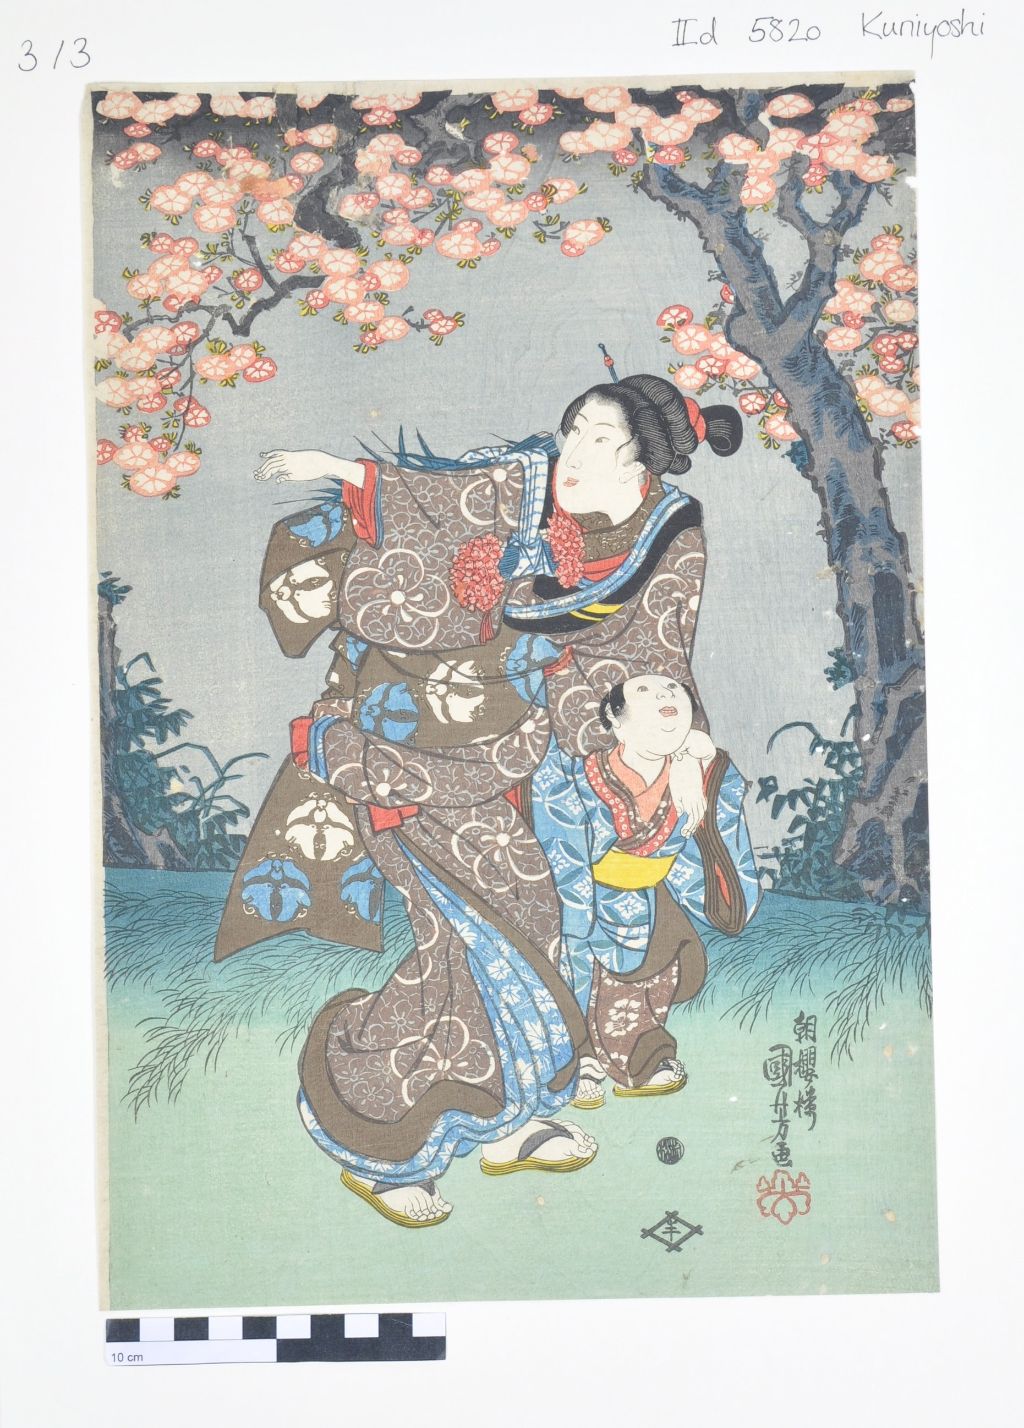 Das Bild zeigt einen Holzschnitt. Darauf hält eine Mutter ihr Kind um die Schulter. Mit der anderen Hand pflückt sie Blumen und Gräser. Über ihnen steht ein Baum in voller Blüte. Mutter und Kind tragen traditionelle japanische Gewänder in Braun- und Blautönen.